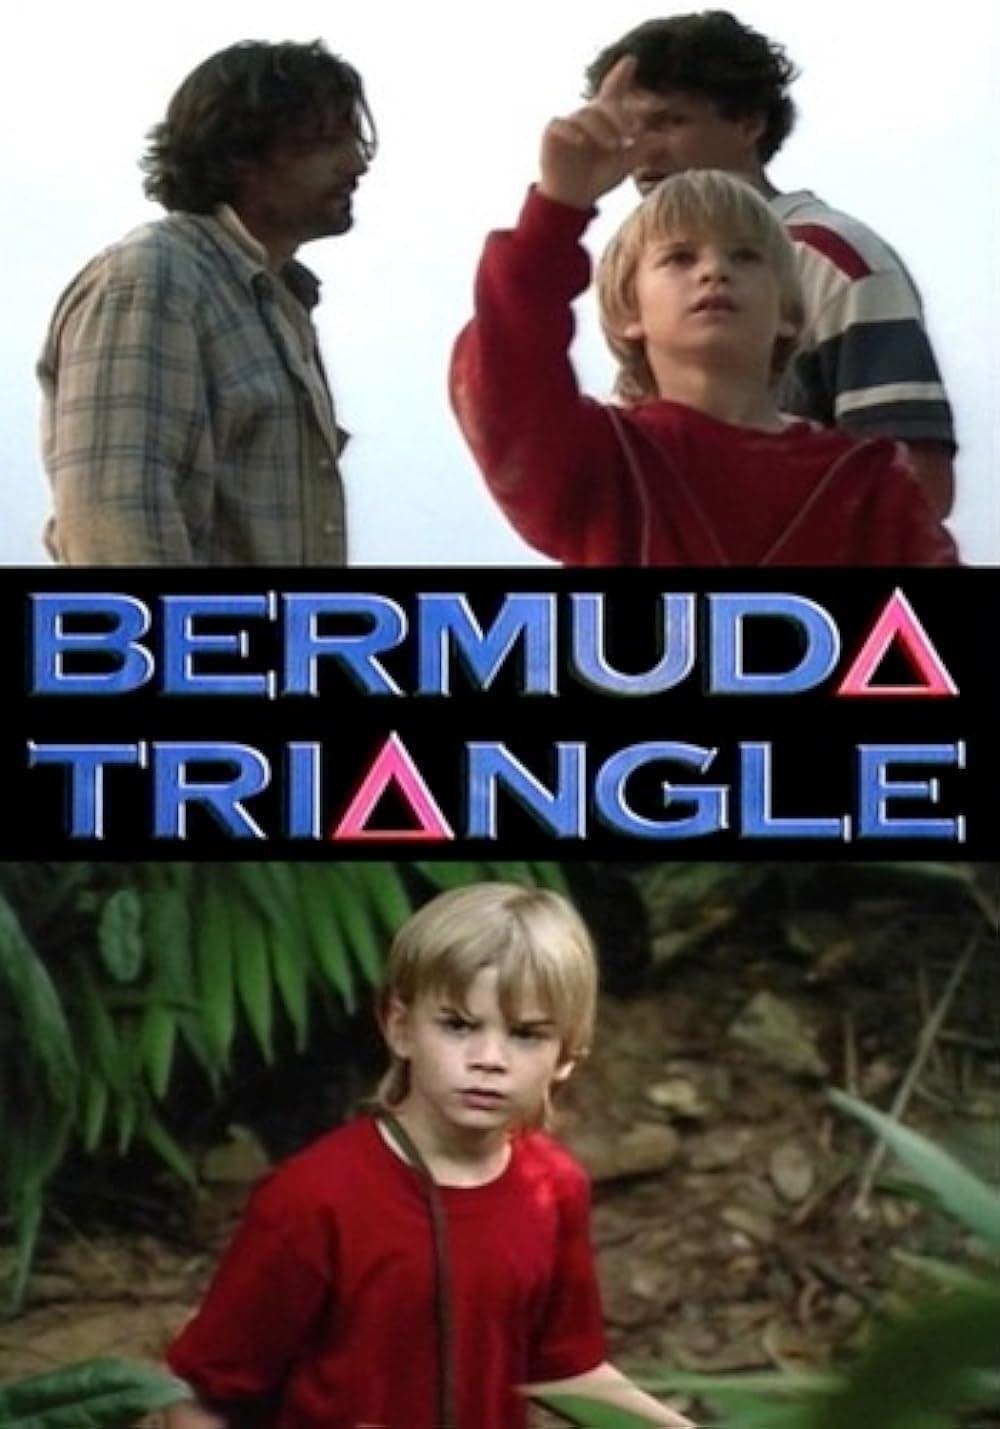 Bermuda Triangle poster